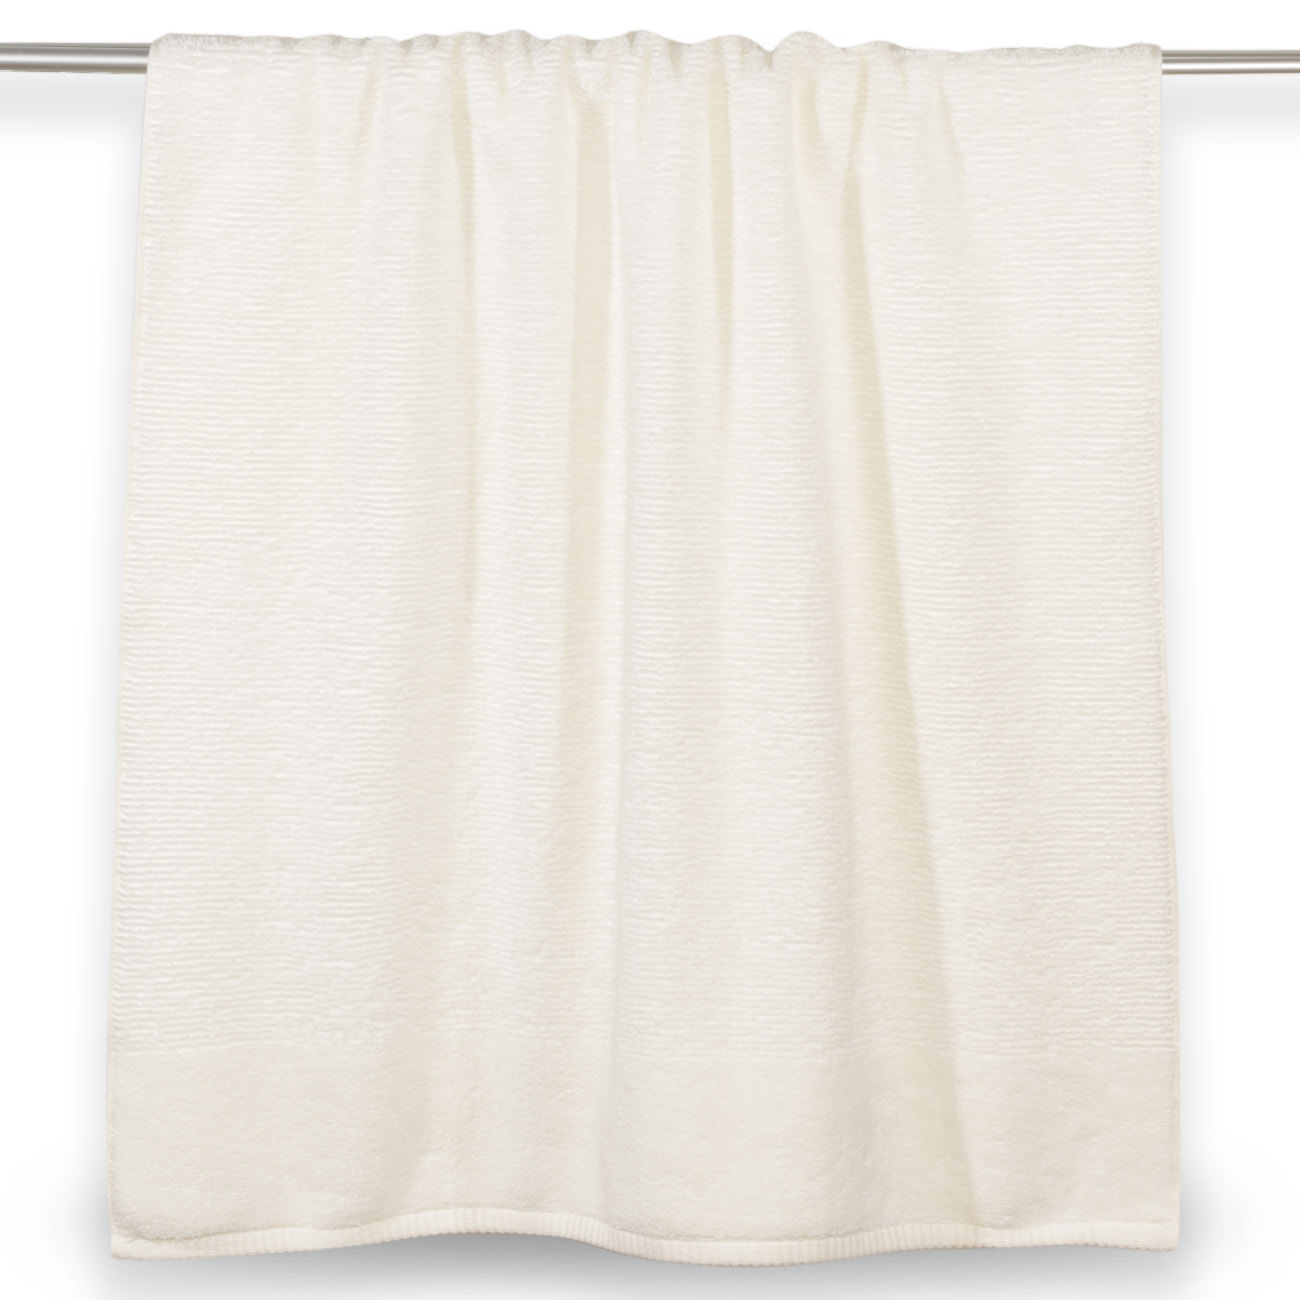 Полотенце, 70х140 см, хлопок, белое, Terry cotton изображение № 2